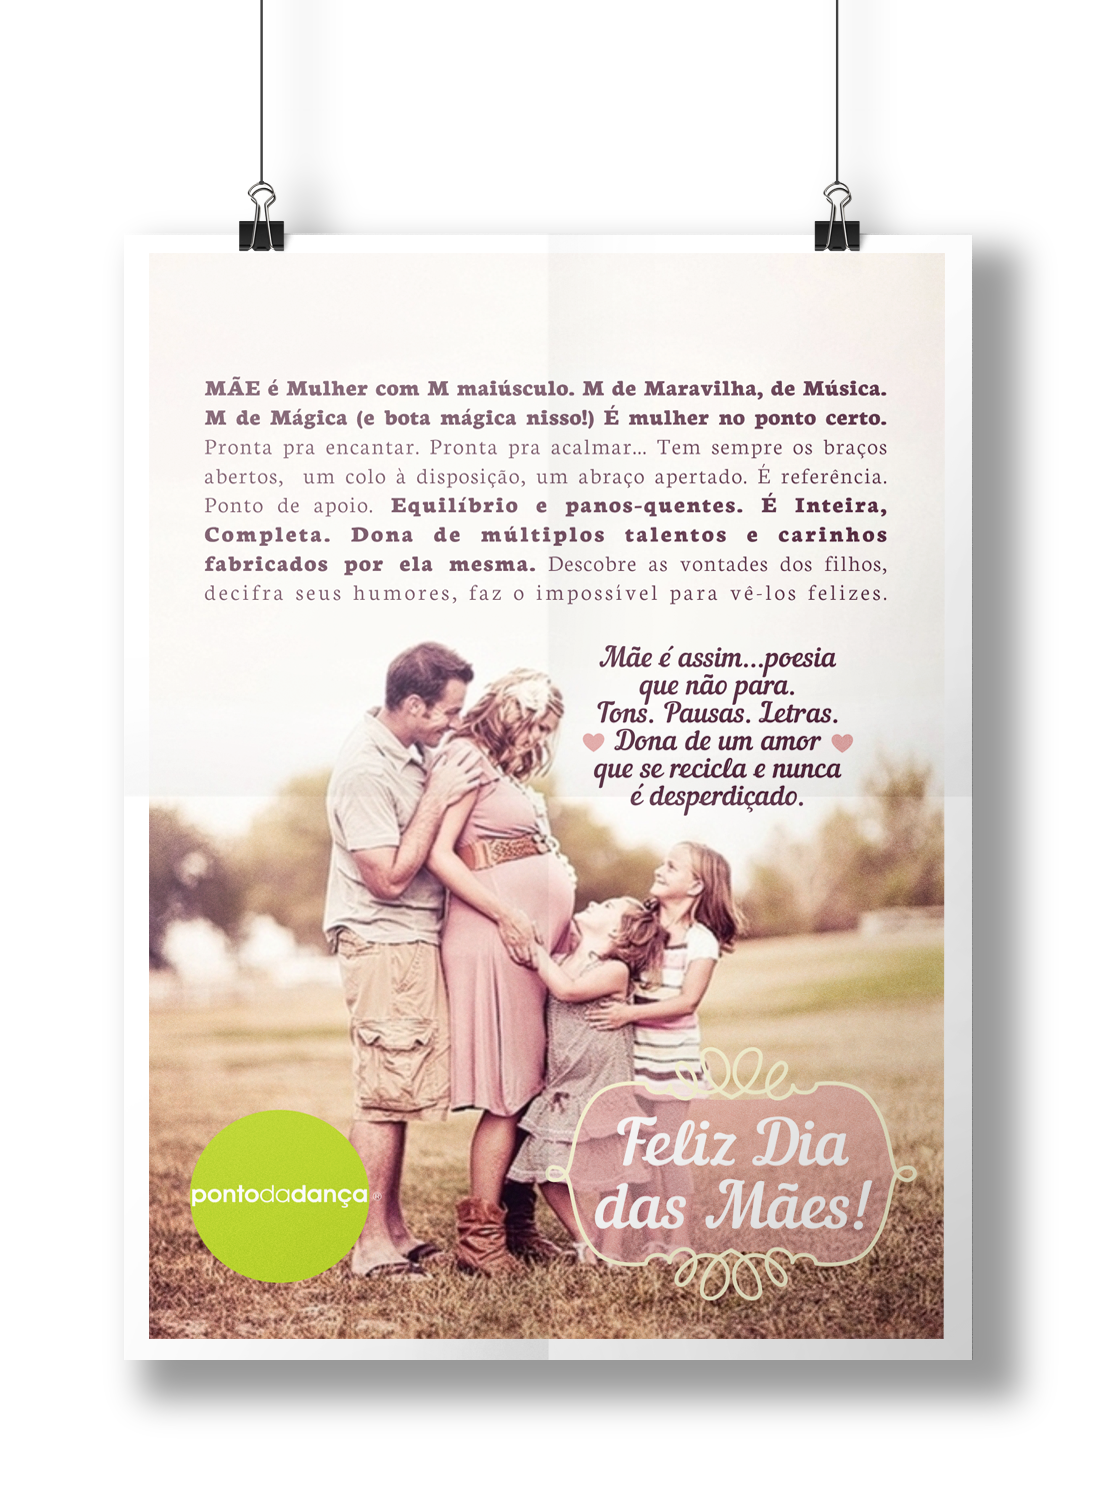 mother Mams mãe dia das mães Love poster facebook timeline mailing divulgação